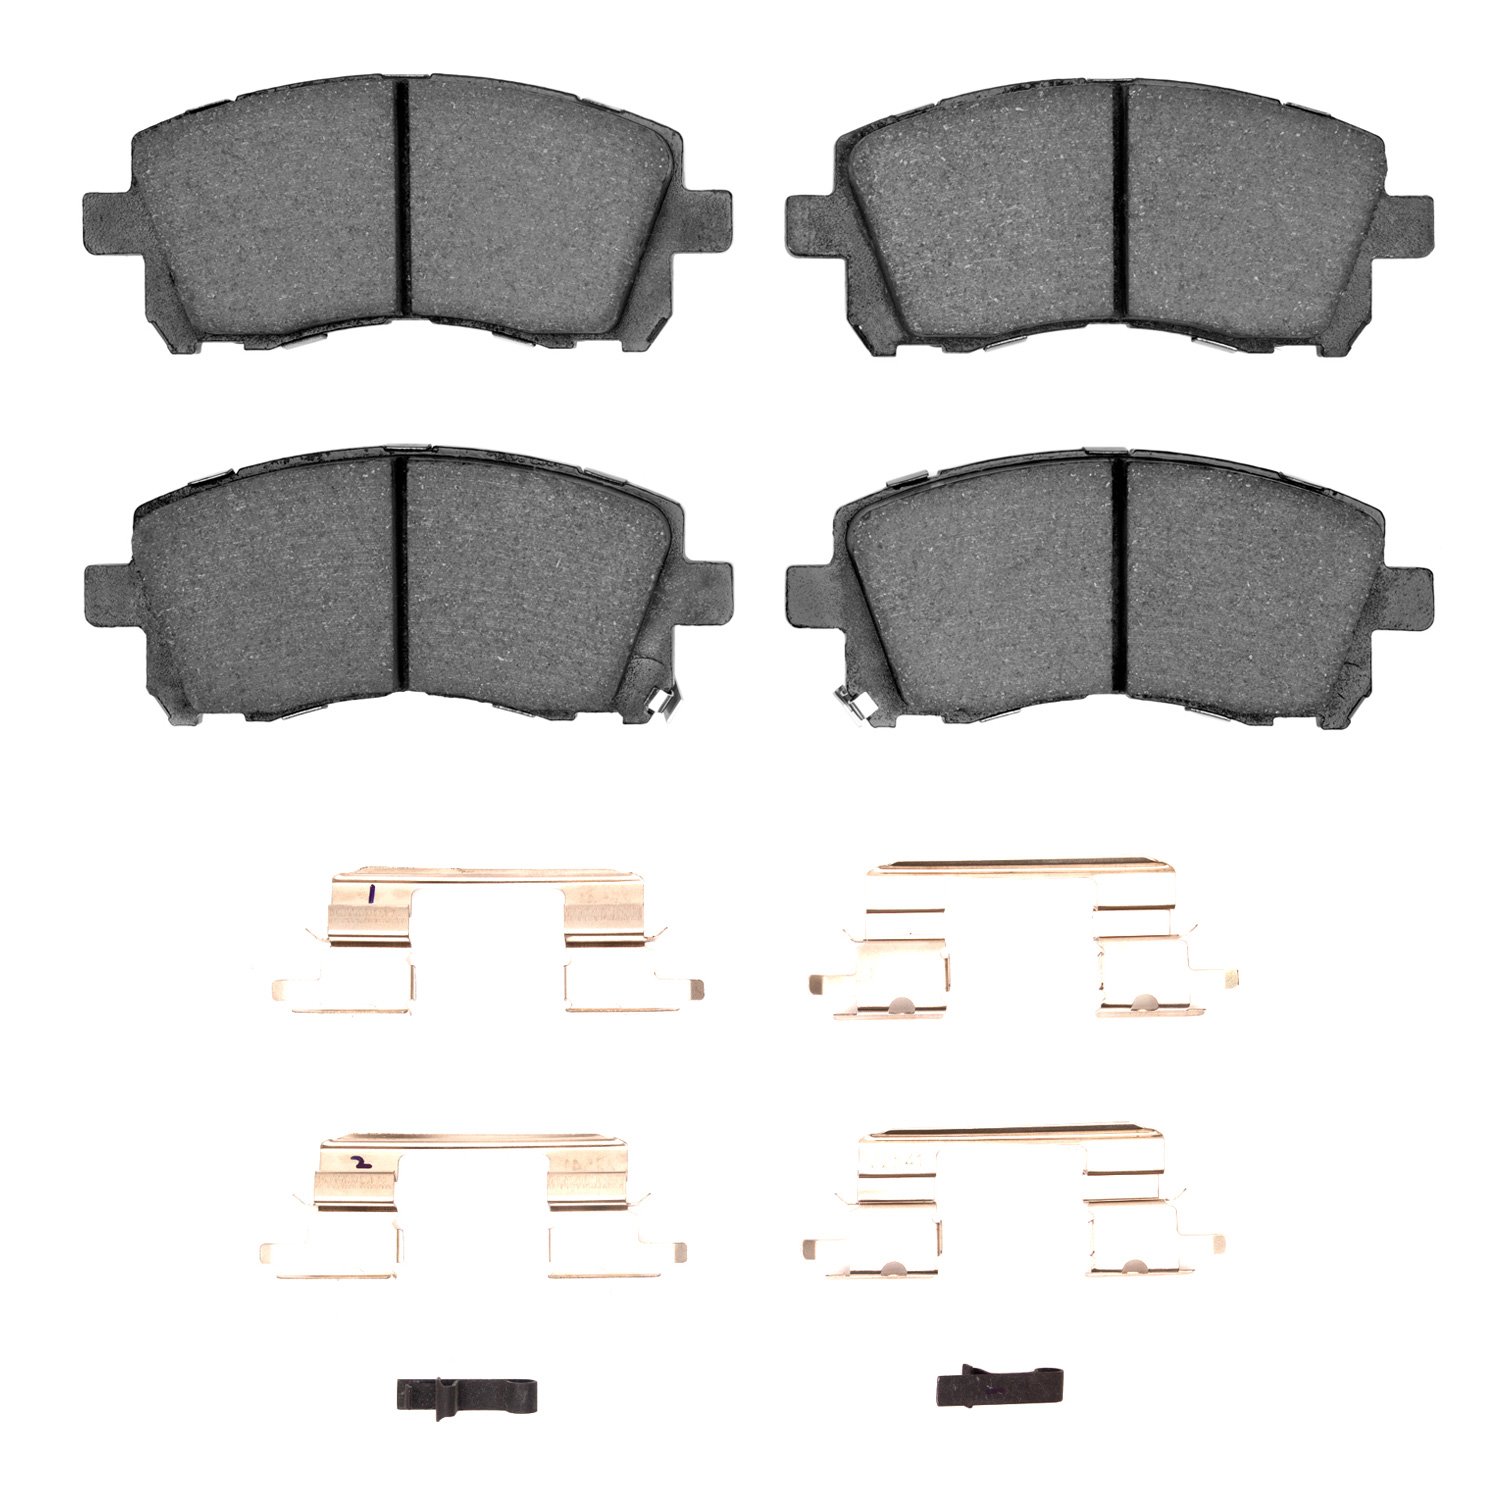 1310-0721-01 3000-Series Ceramic Brake Pads & Hardware Kit, 1997-2003 Subaru, Position: Front